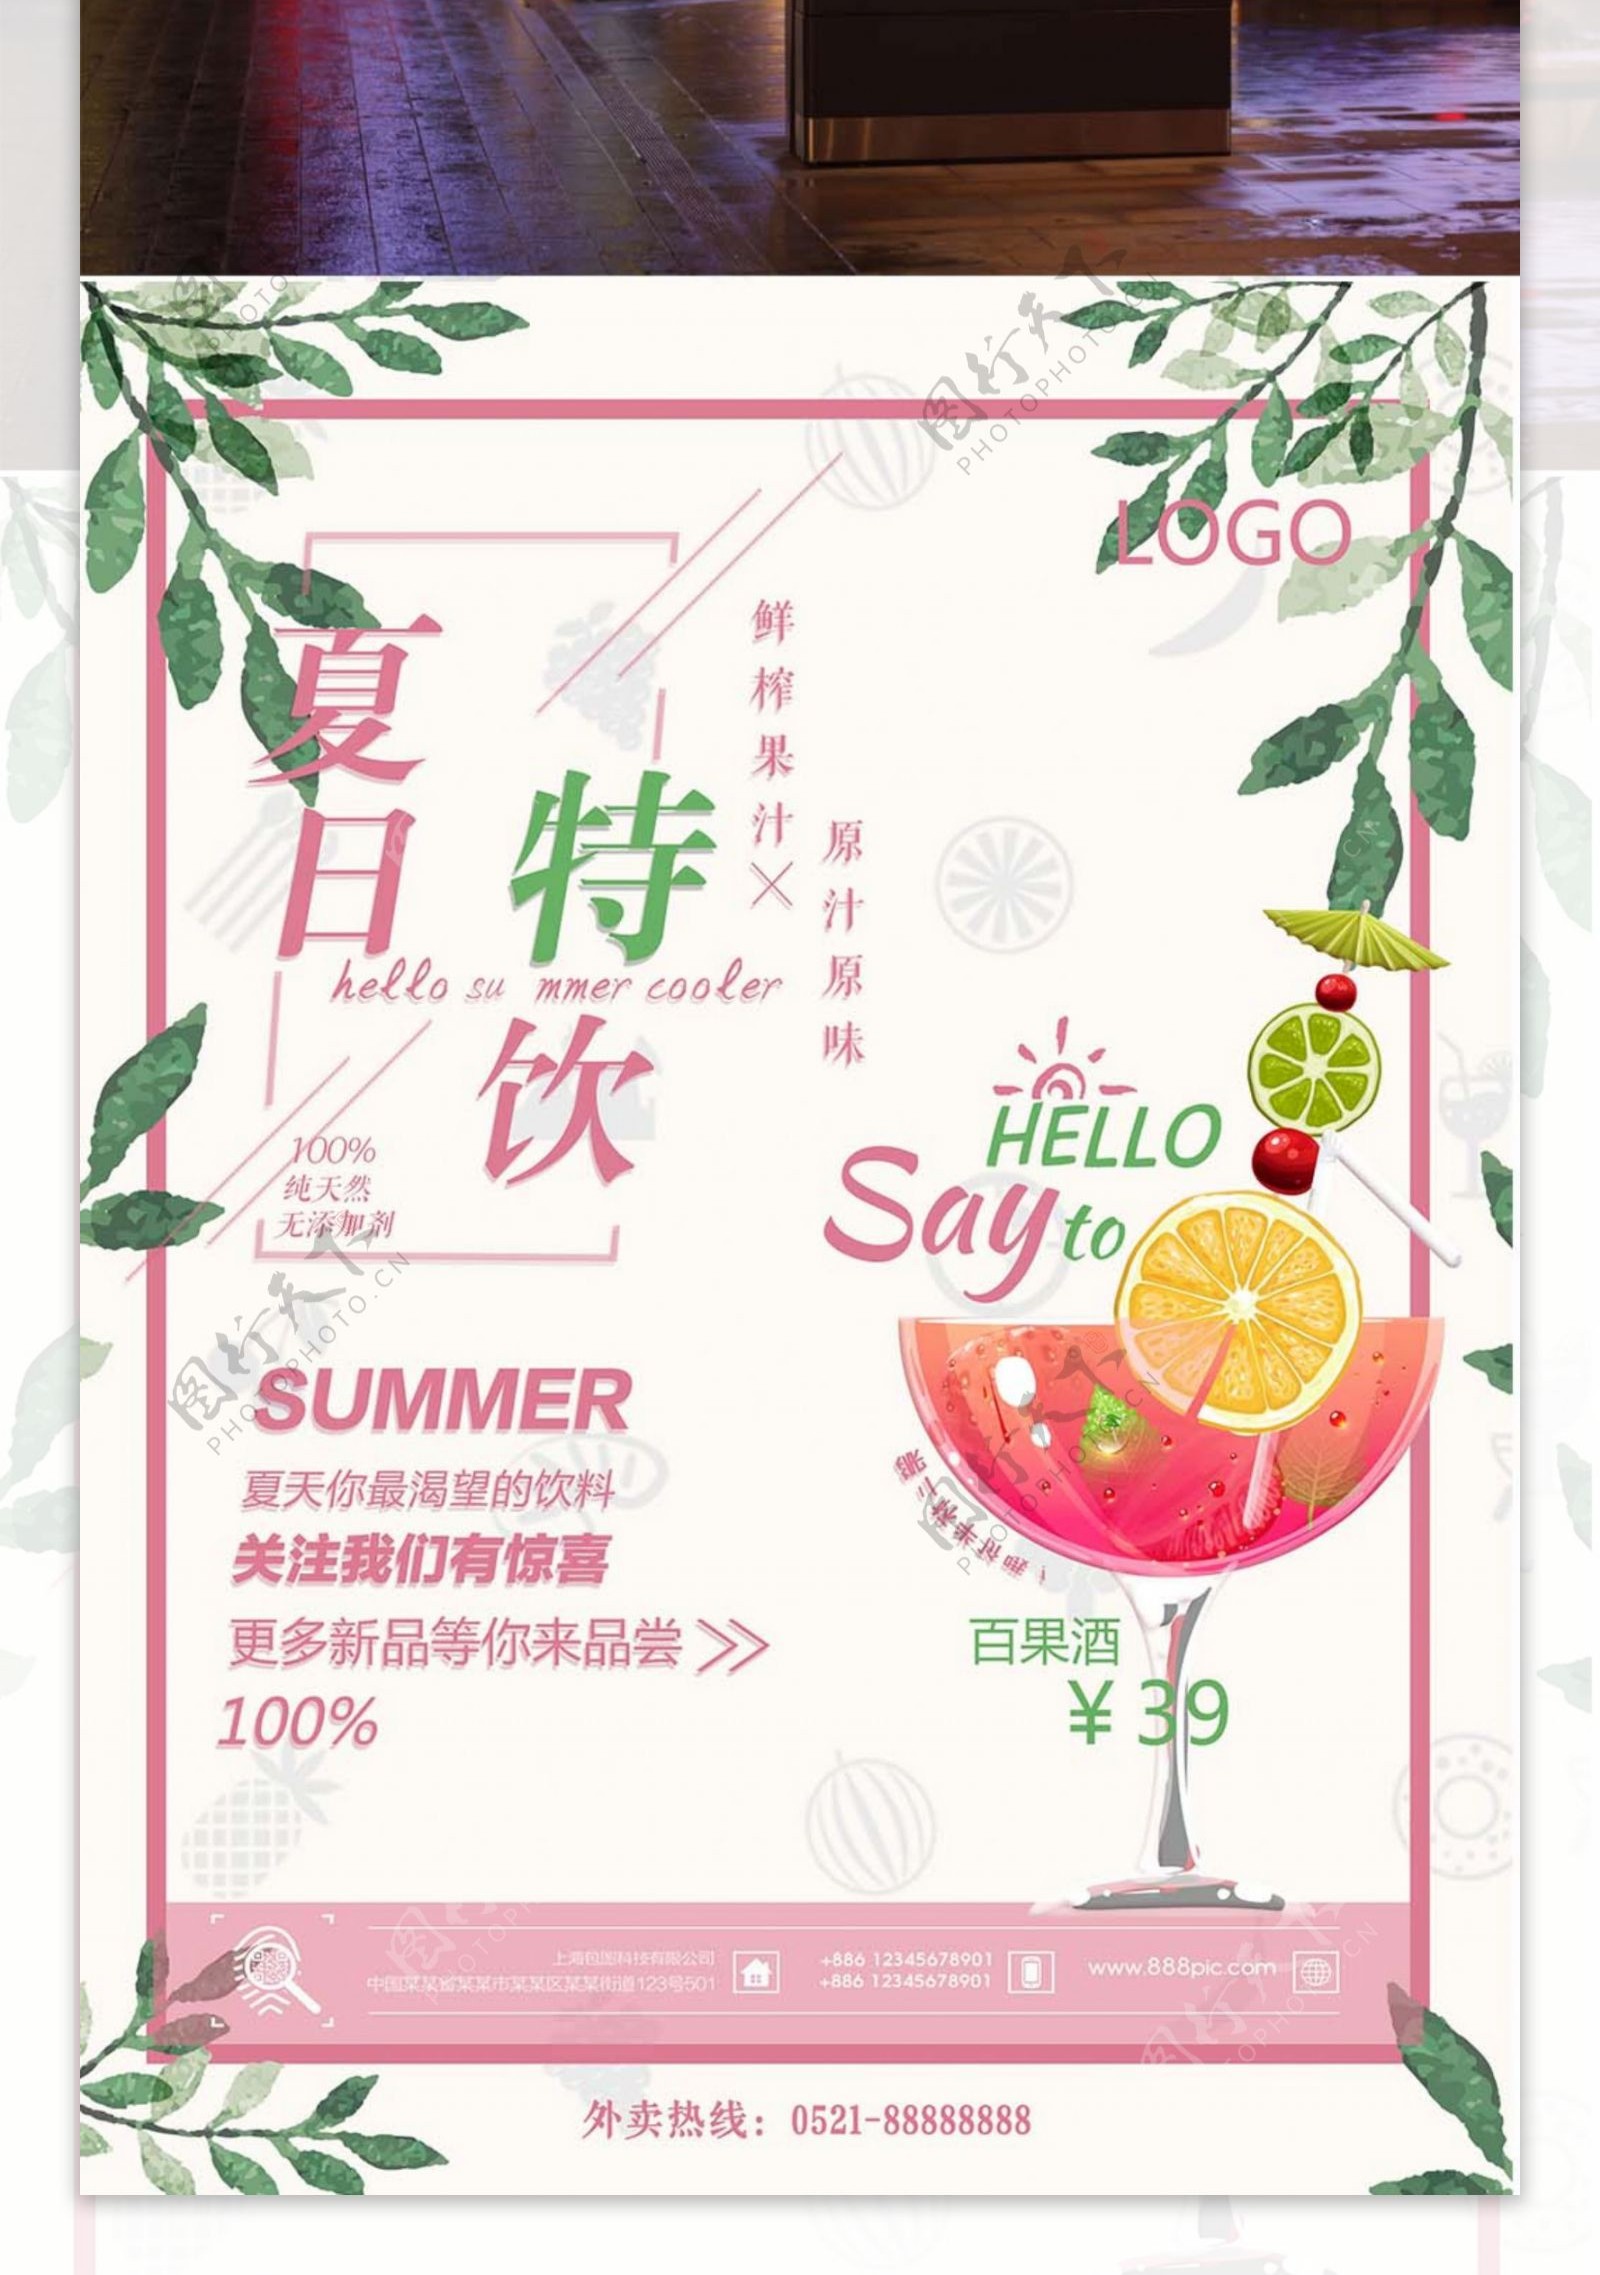 夏日饮料粉红简约清新商业海报设计模板